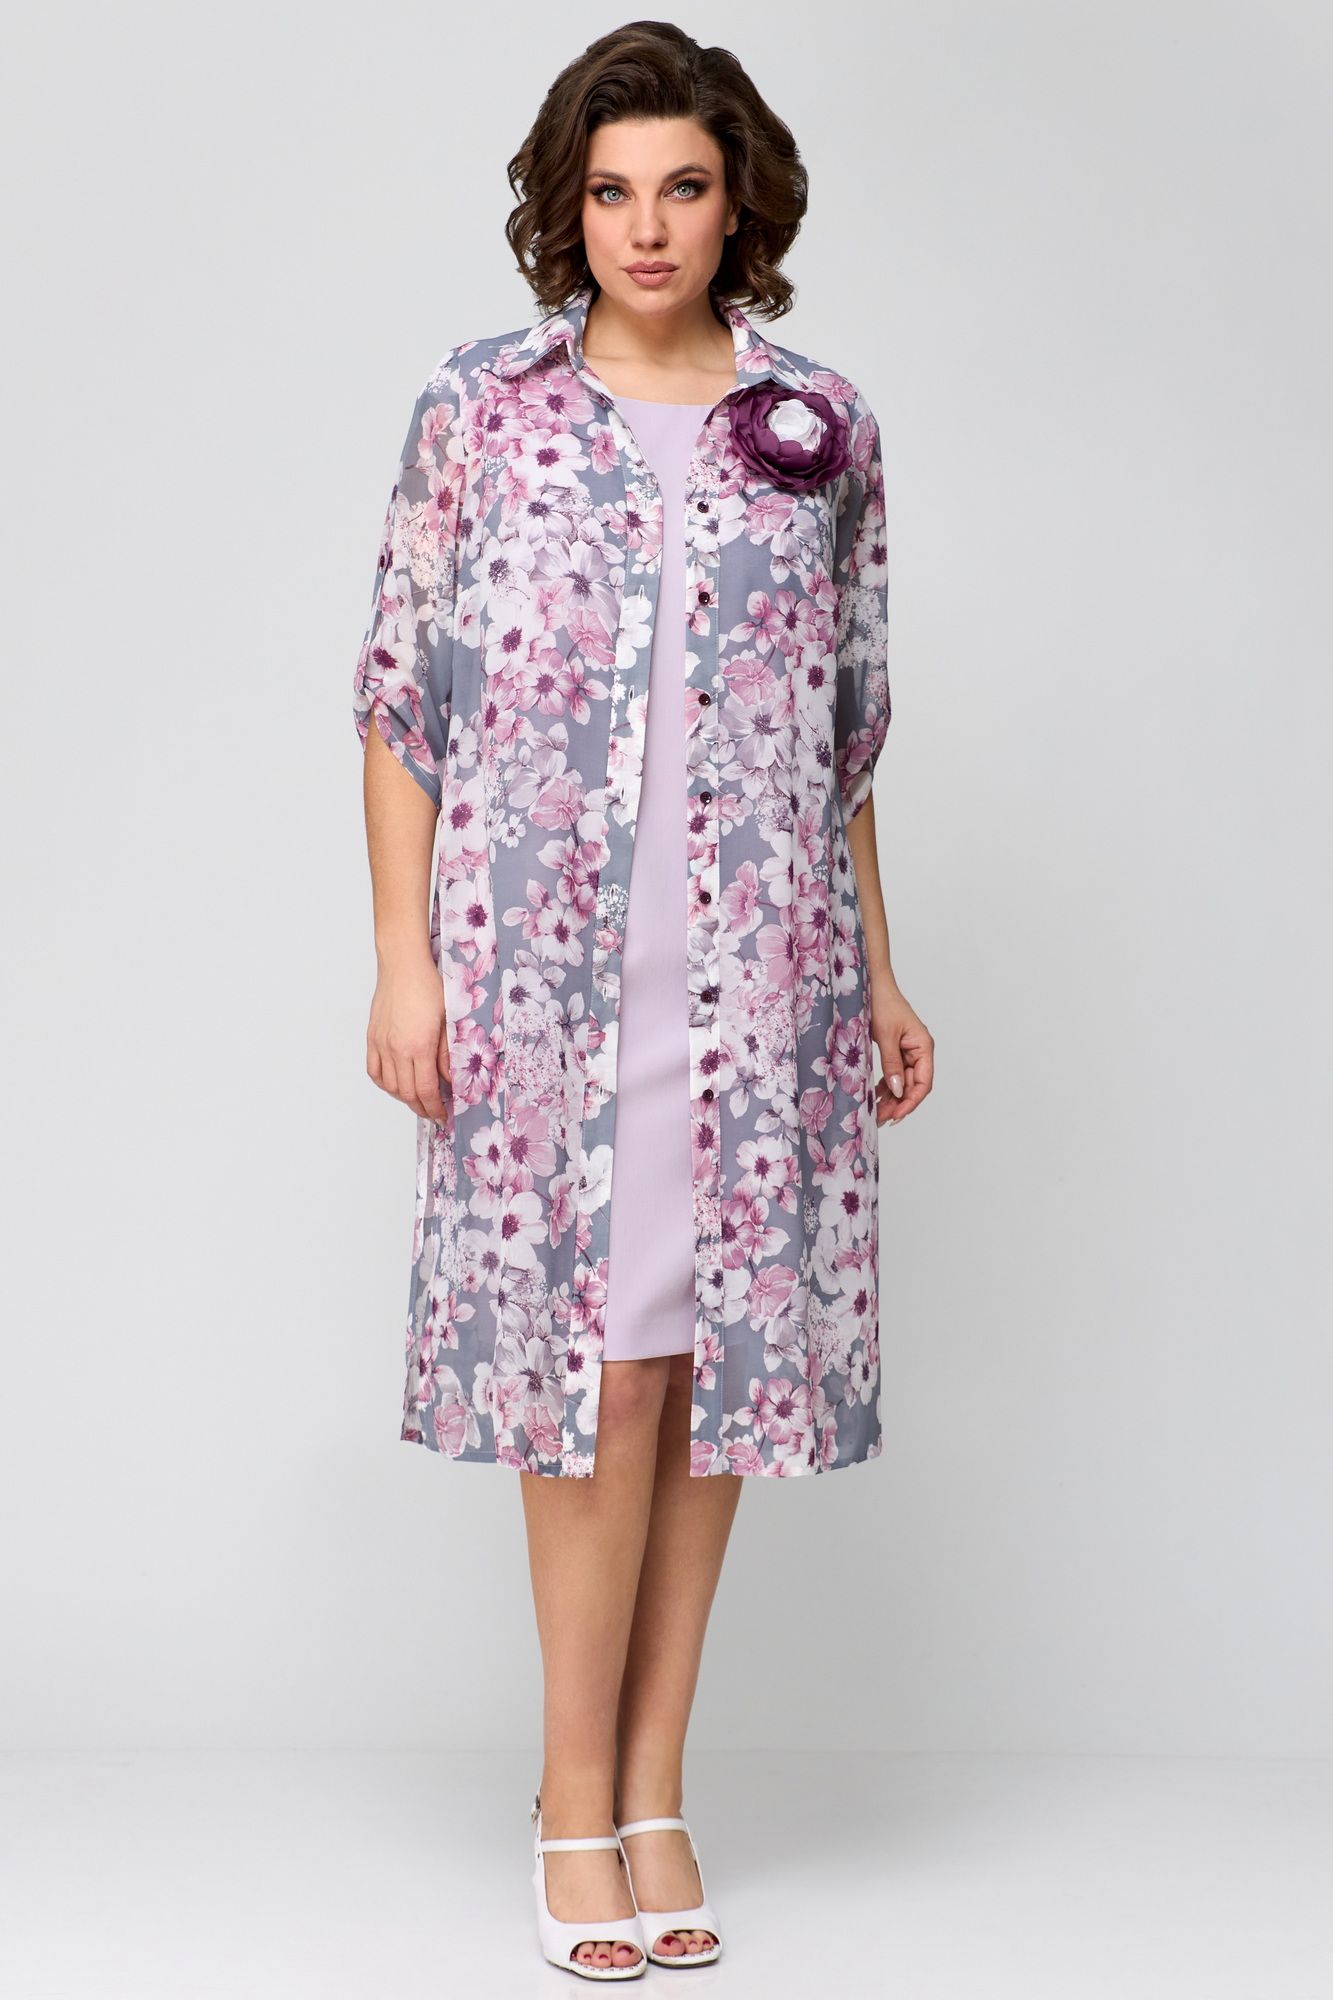 Комплекты с платьем Мишель стиль 1188 розово-серый